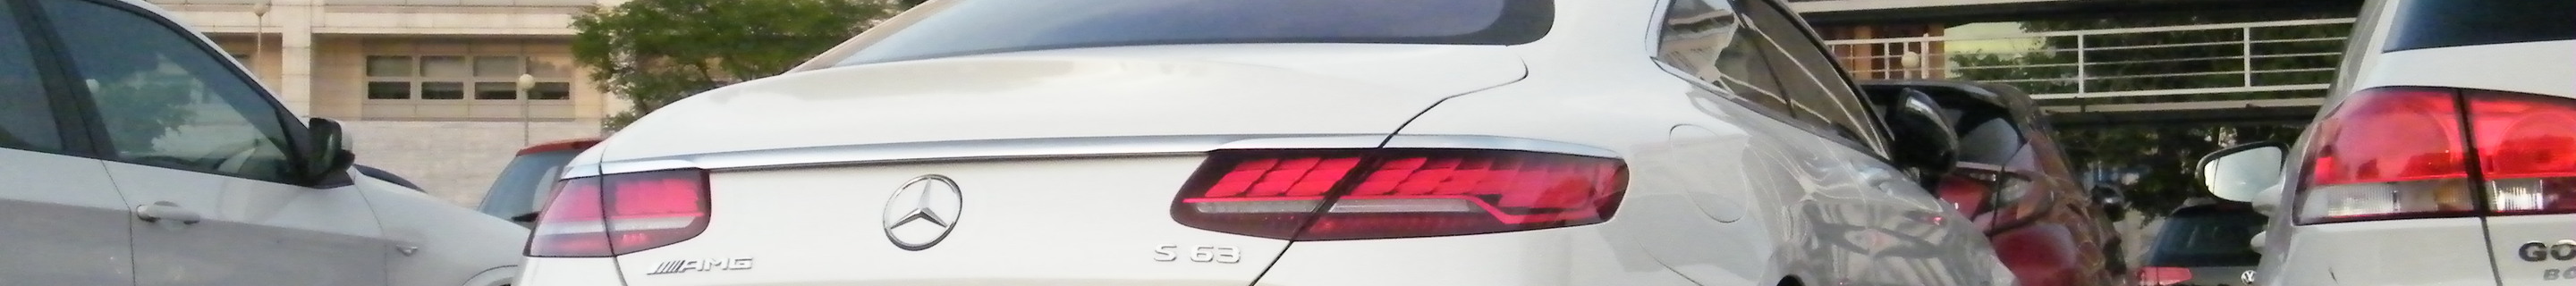 Mercedes-AMG S 63 Coupé C217 2018